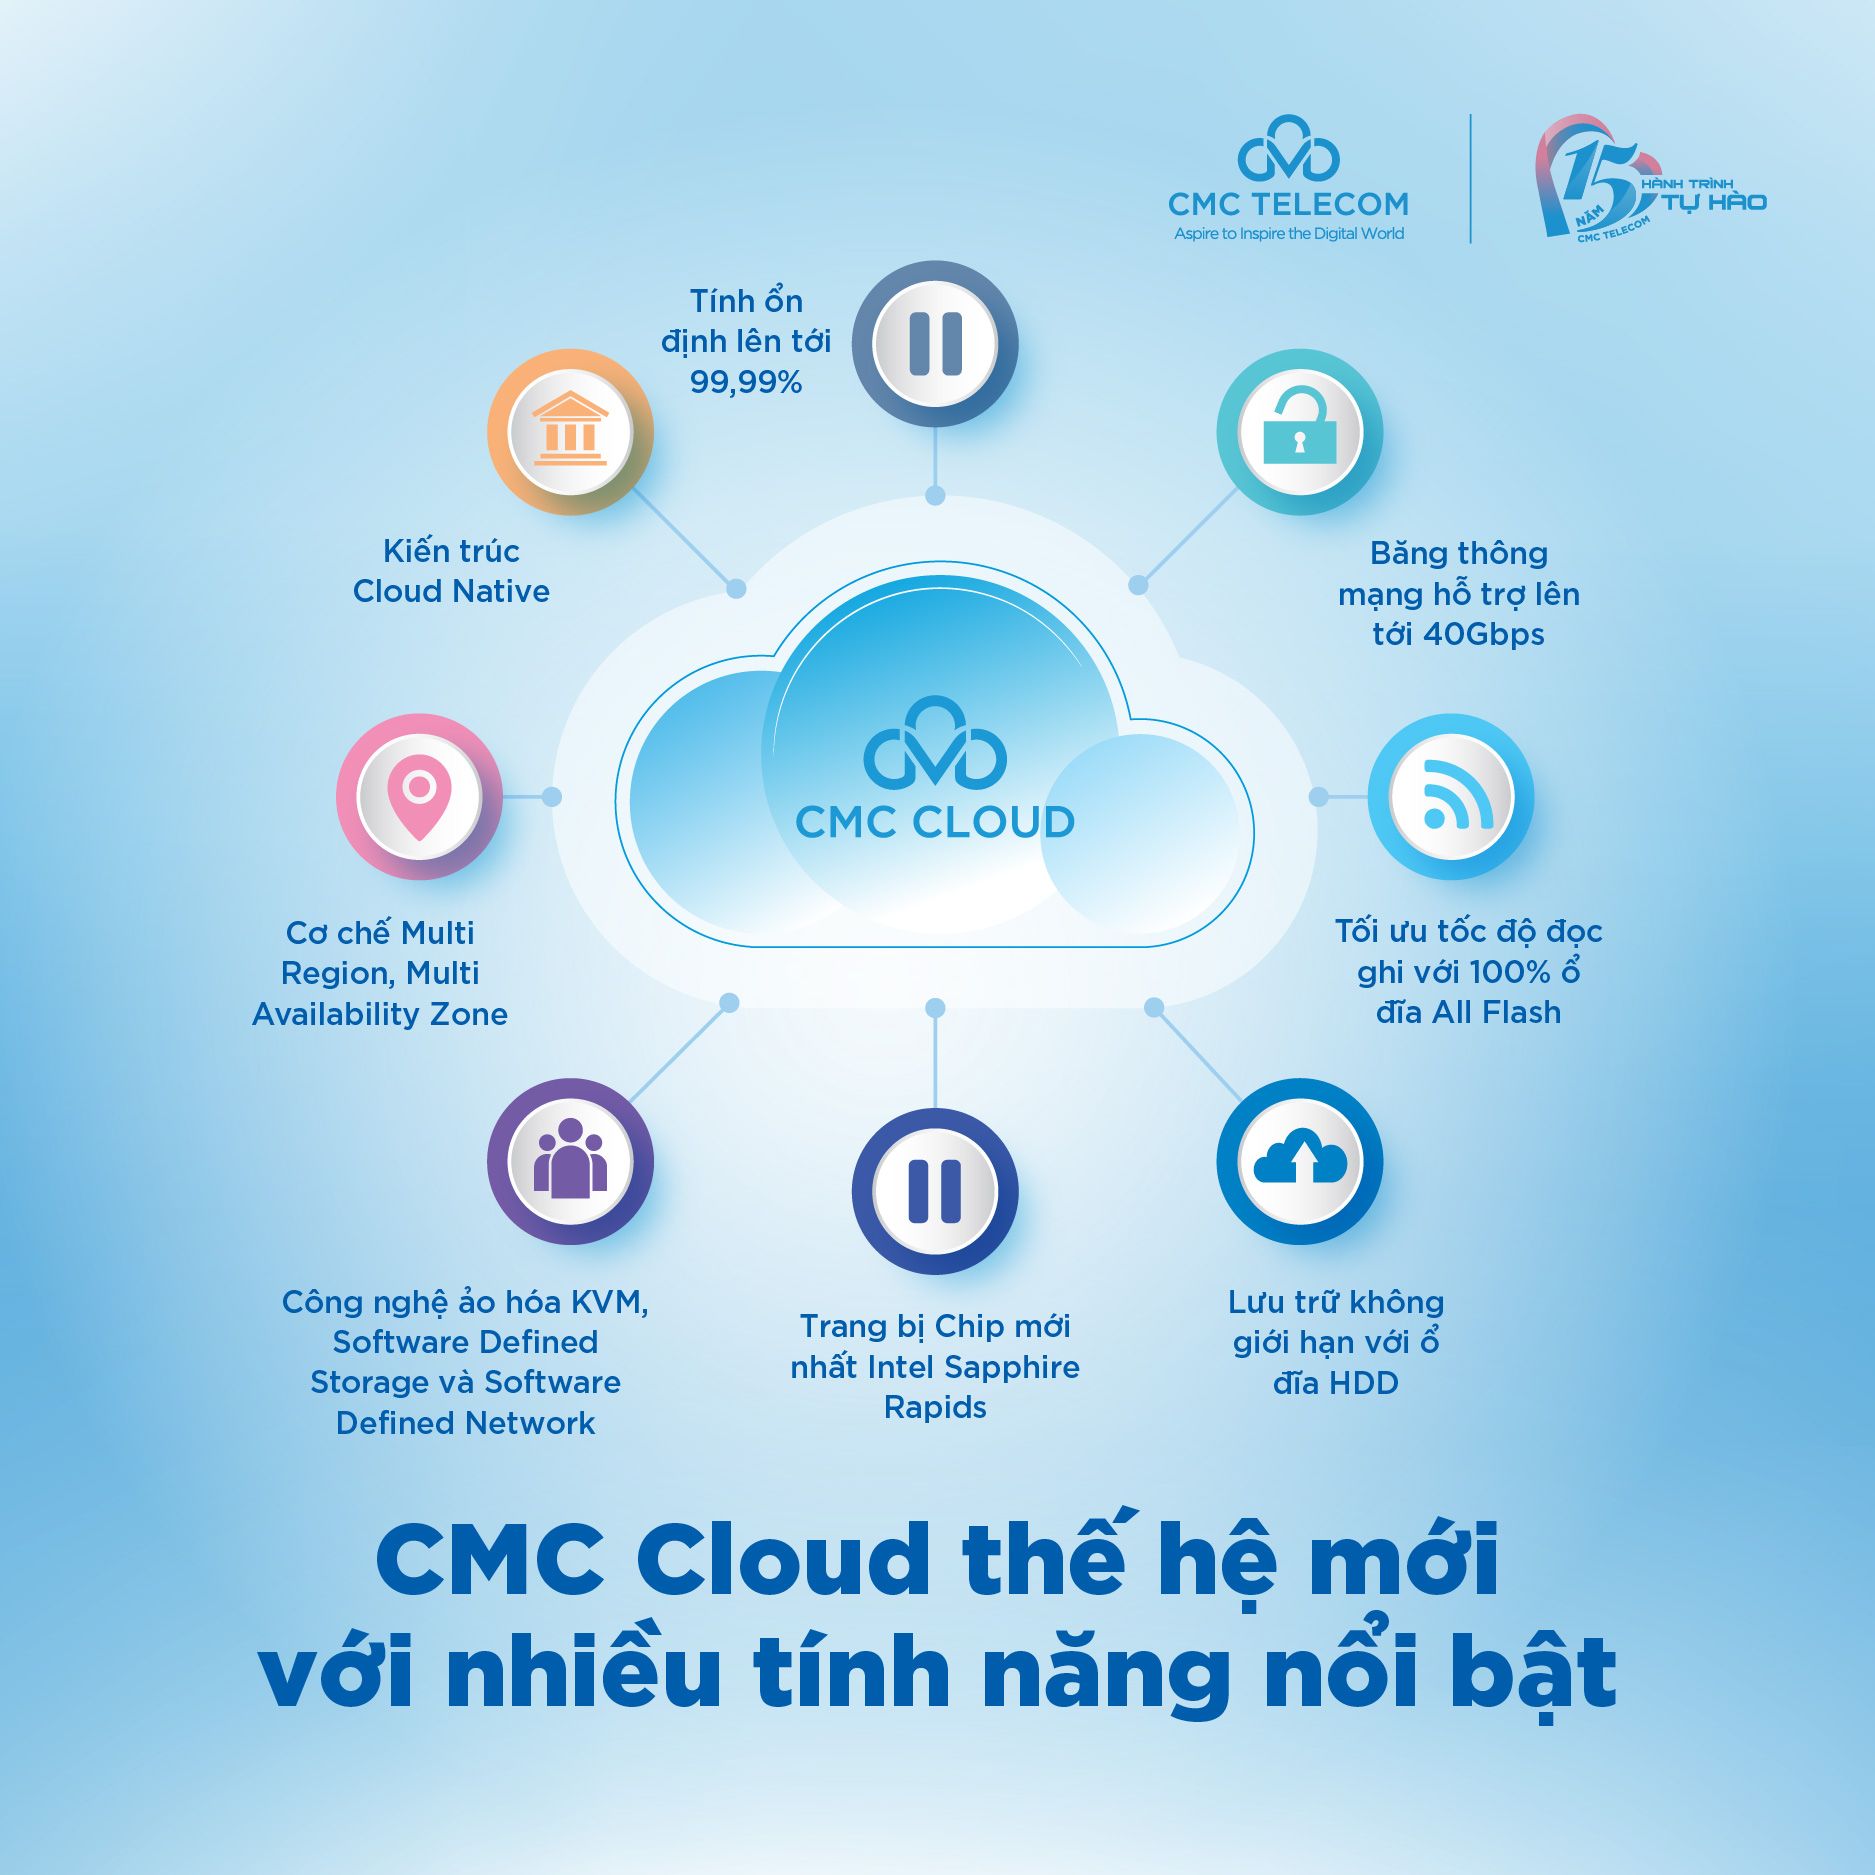 CMC Cloud thế hệ mới với nhiều tính năng nổi bật 